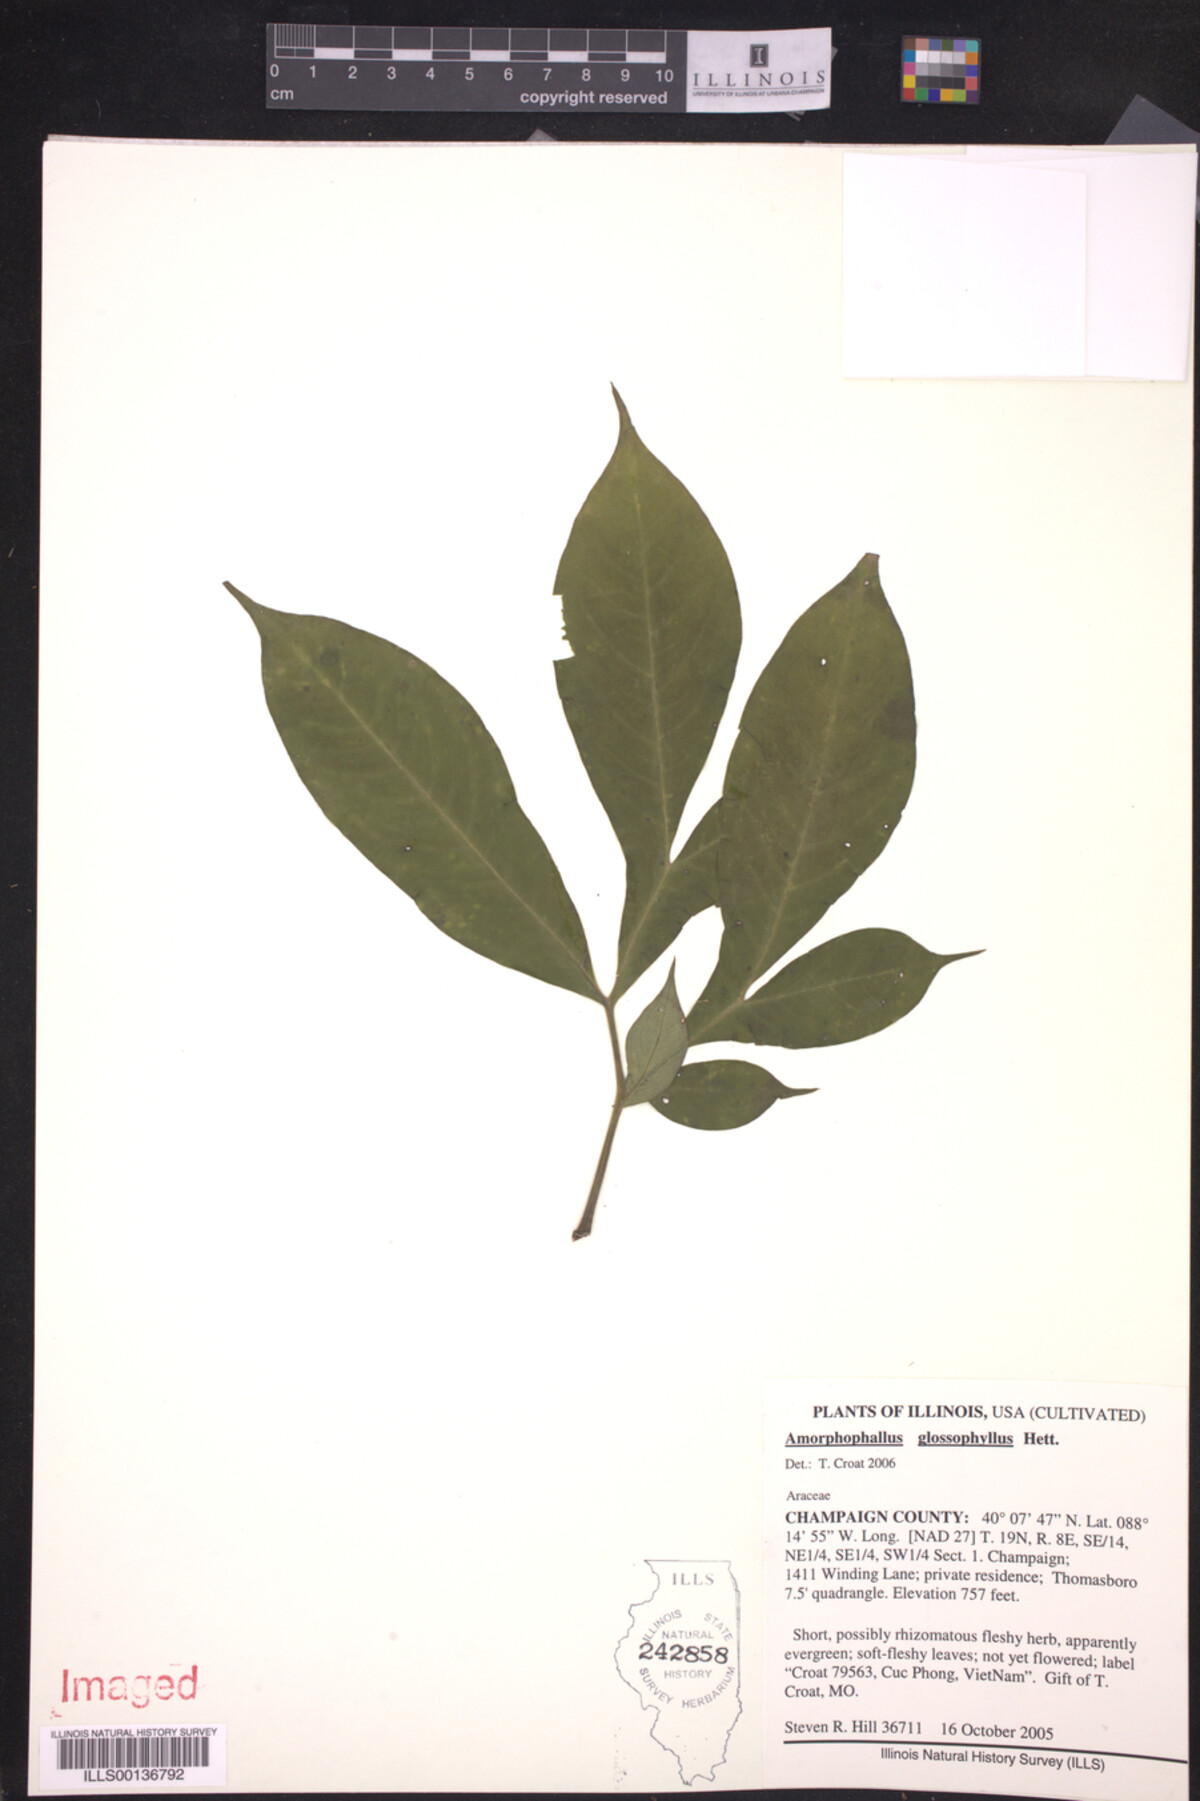 Amorphophallus glossophyllus image